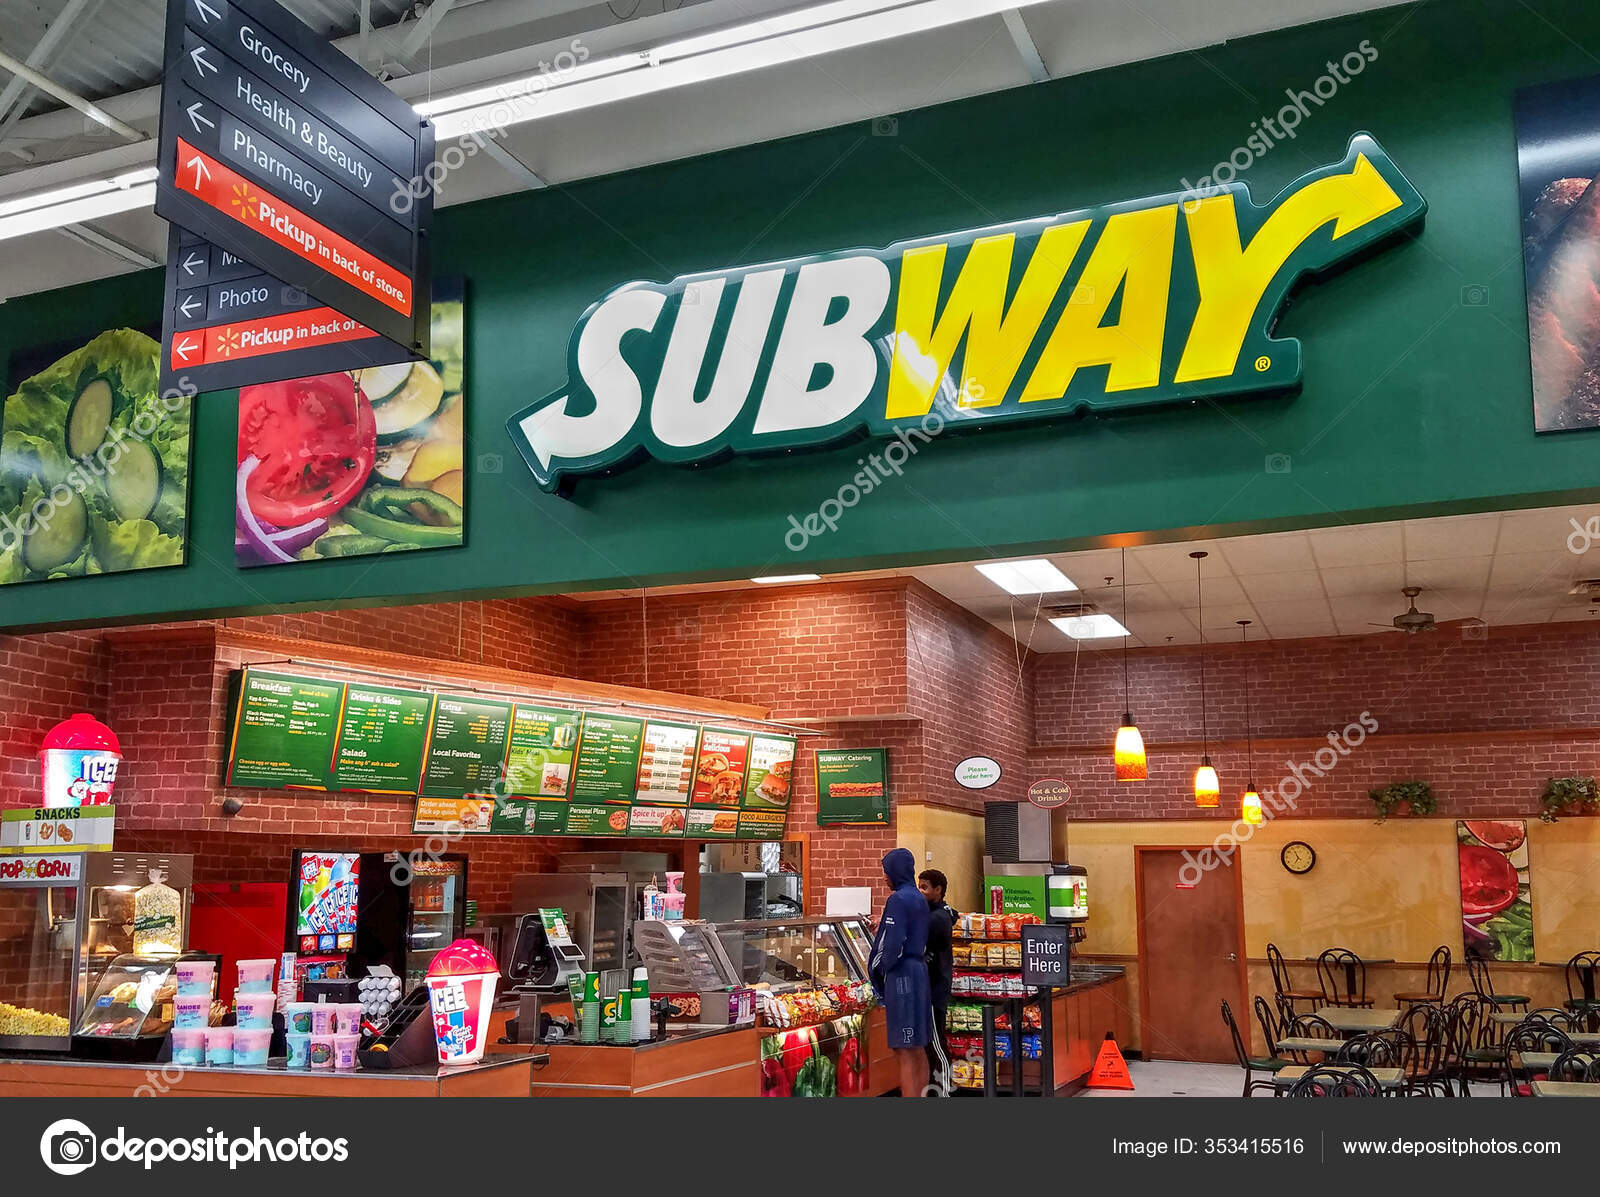 Сабвей это: Subway обновил логотип впервые за 15 лет